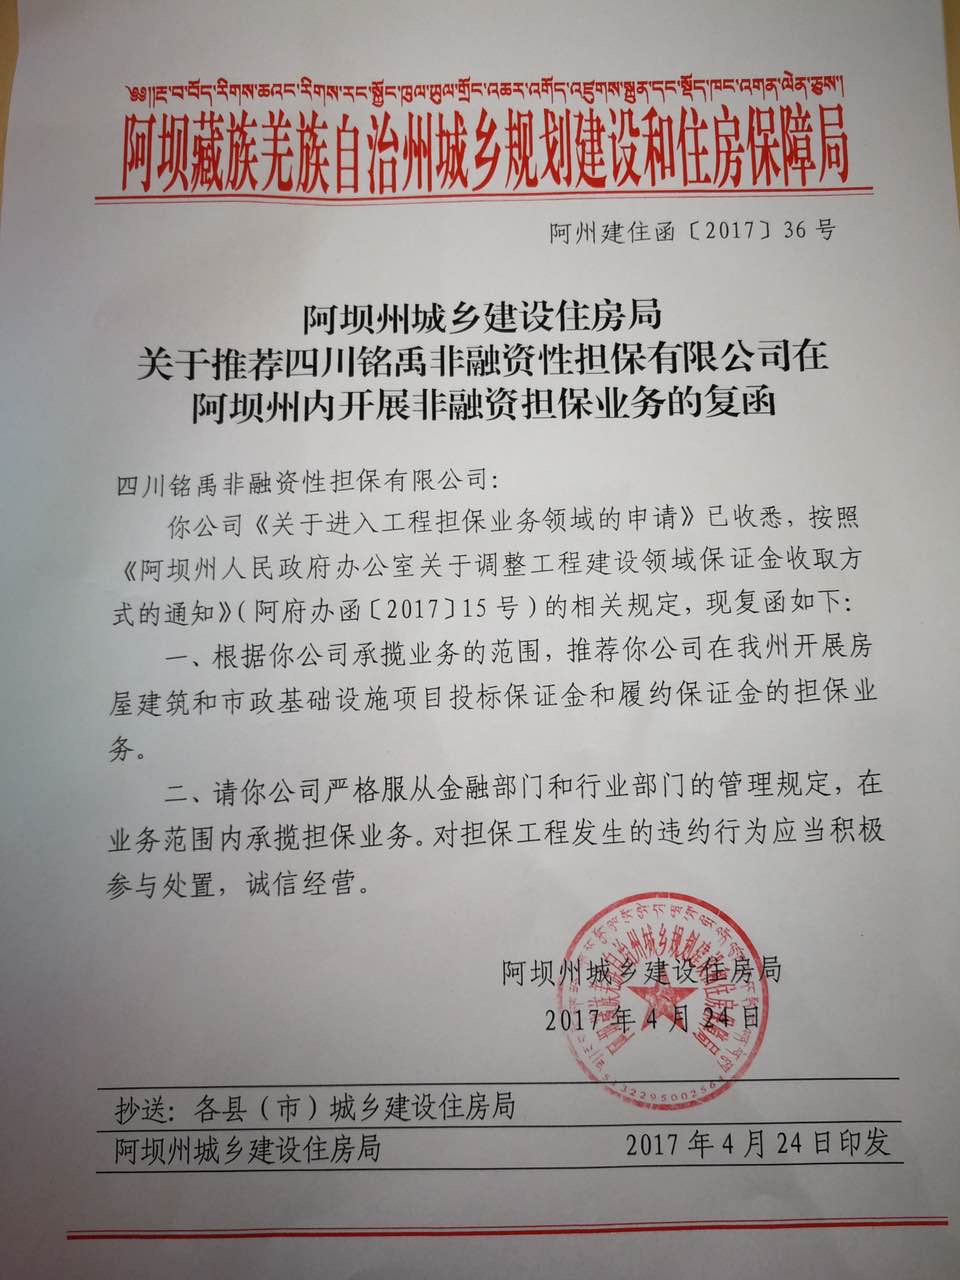 阿坝藏族羌族自治州城乡规划建设和住房保障局入围备案